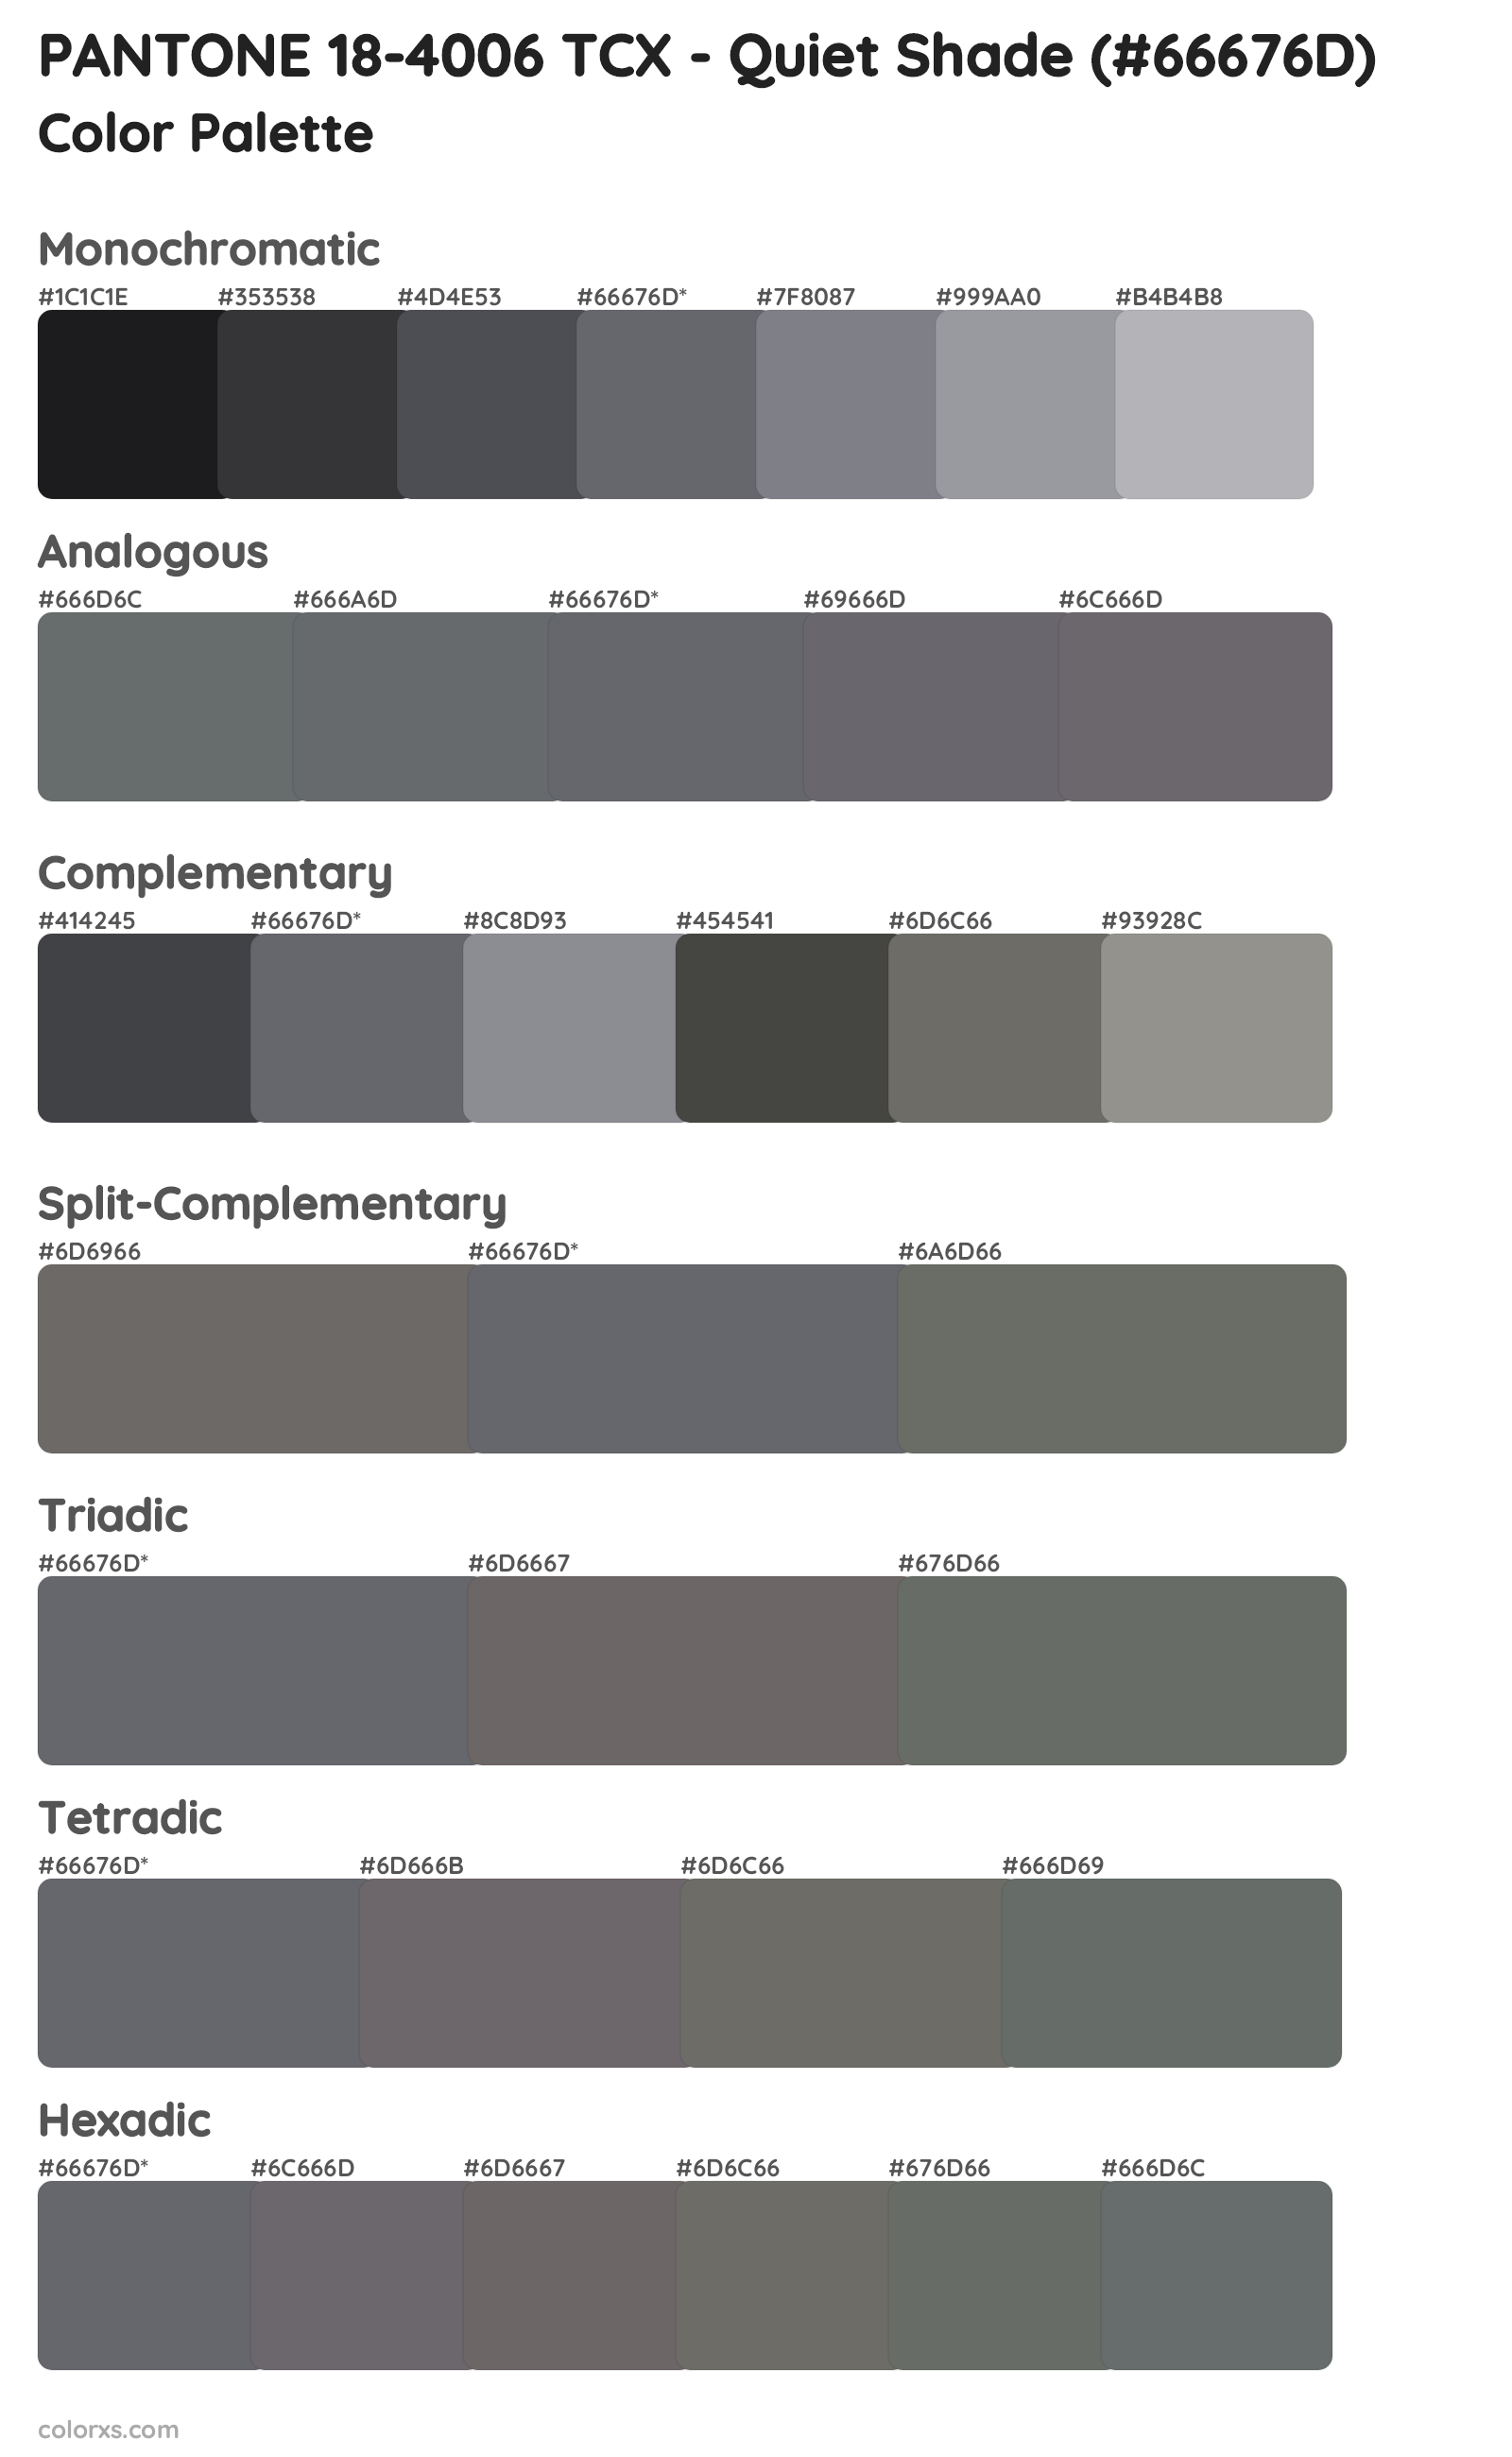 PANTONE 18-4006 TCX - Quiet Shade Color Scheme Palettes